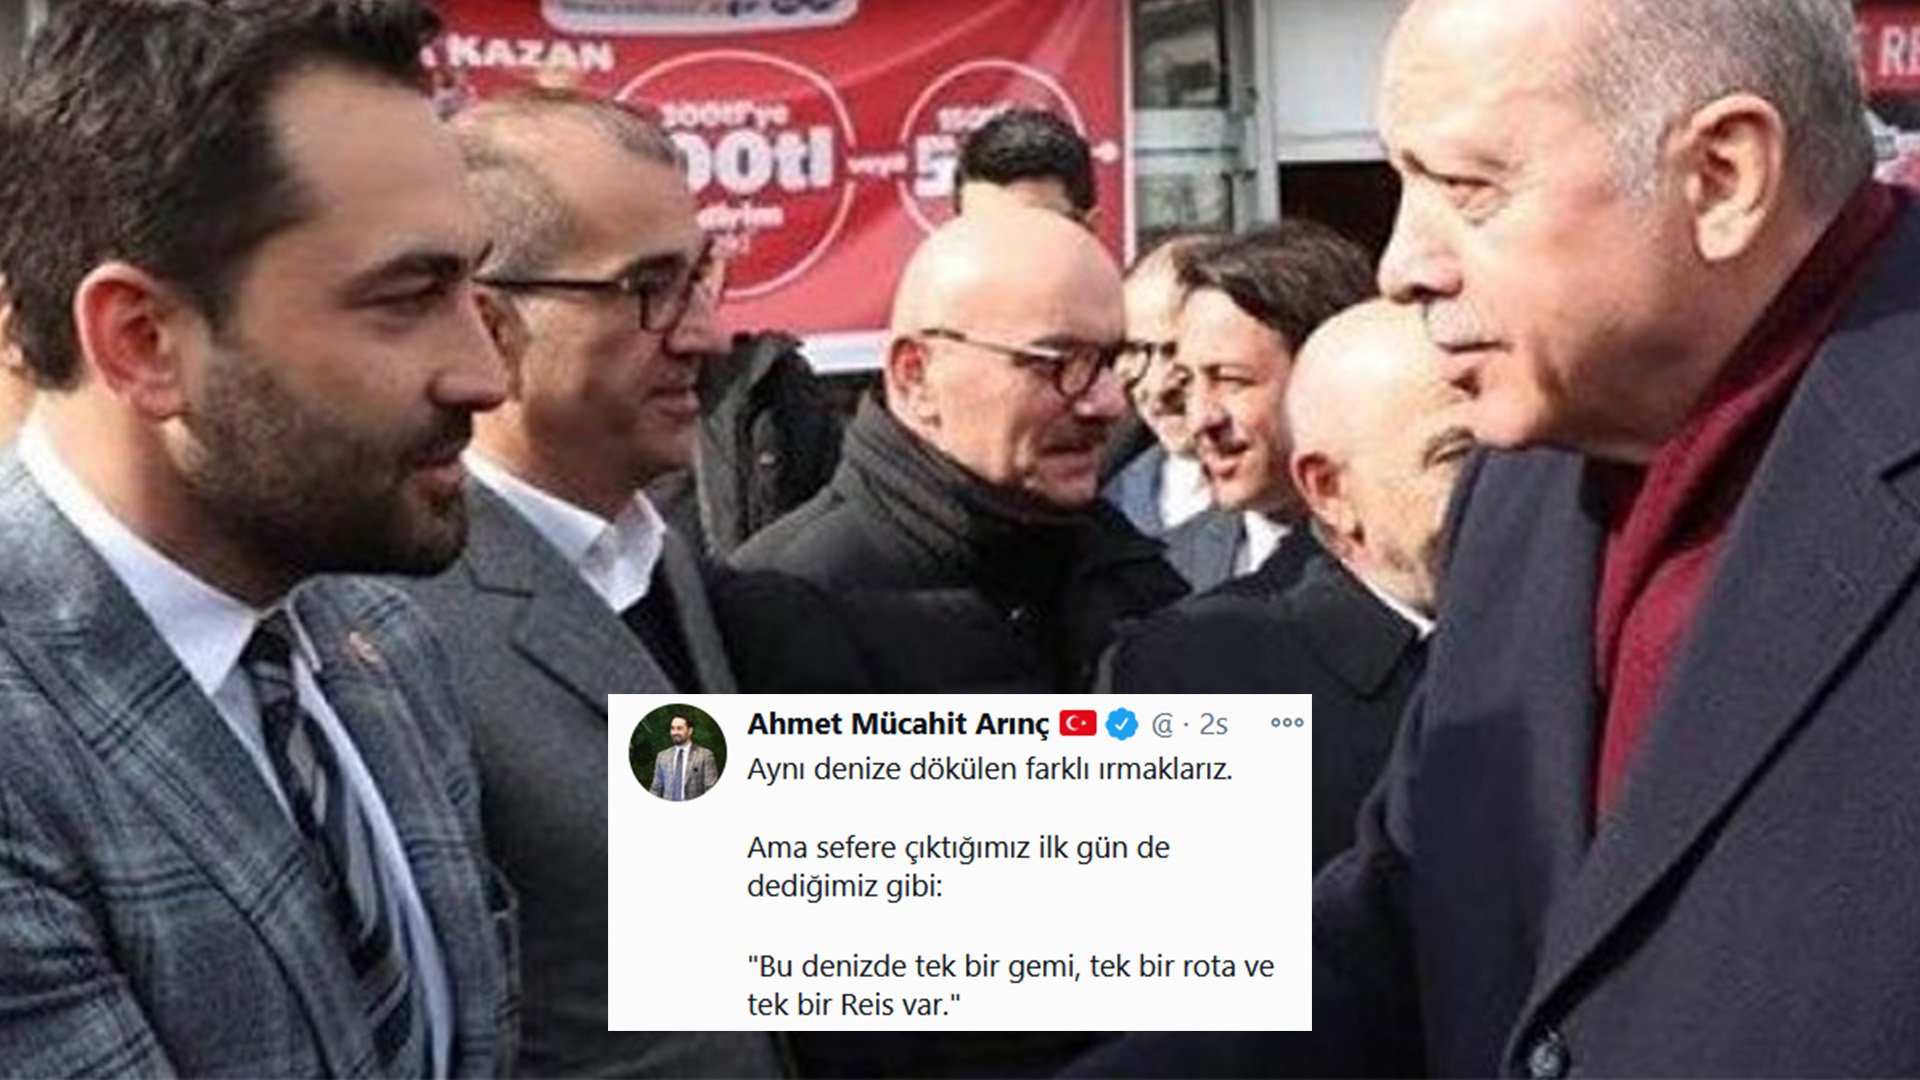 Özgür Gündem Twitterissä: "Bülent Arınç'ın oğlu AKP Milletvekili Ahmet Mücahit  Arınç: "Bu denizde bir tek gemi ve tek bir reis var"  https://t.co/KzFttcb2Hs" / Twitter